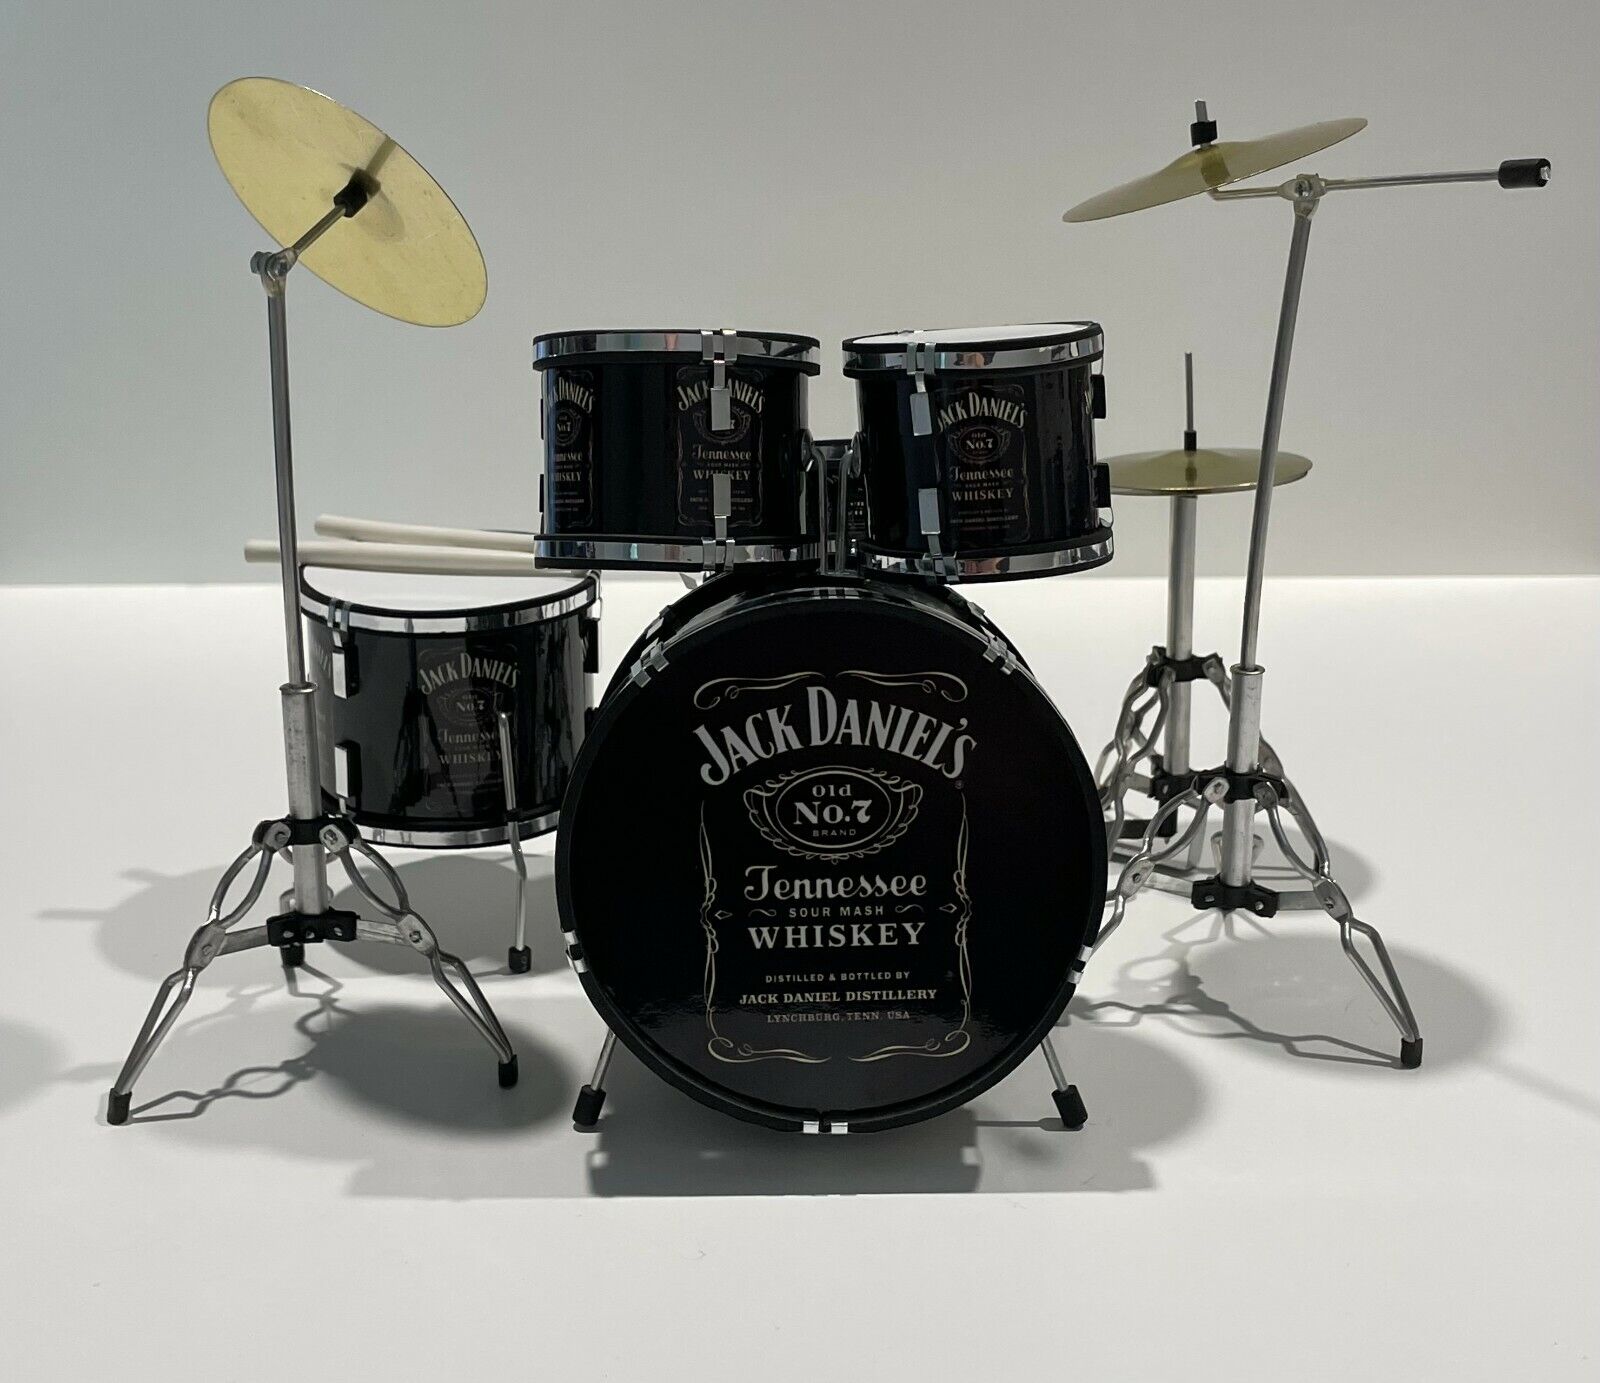 Jack Daniels Miniature Replica Drum Kit Brand New 